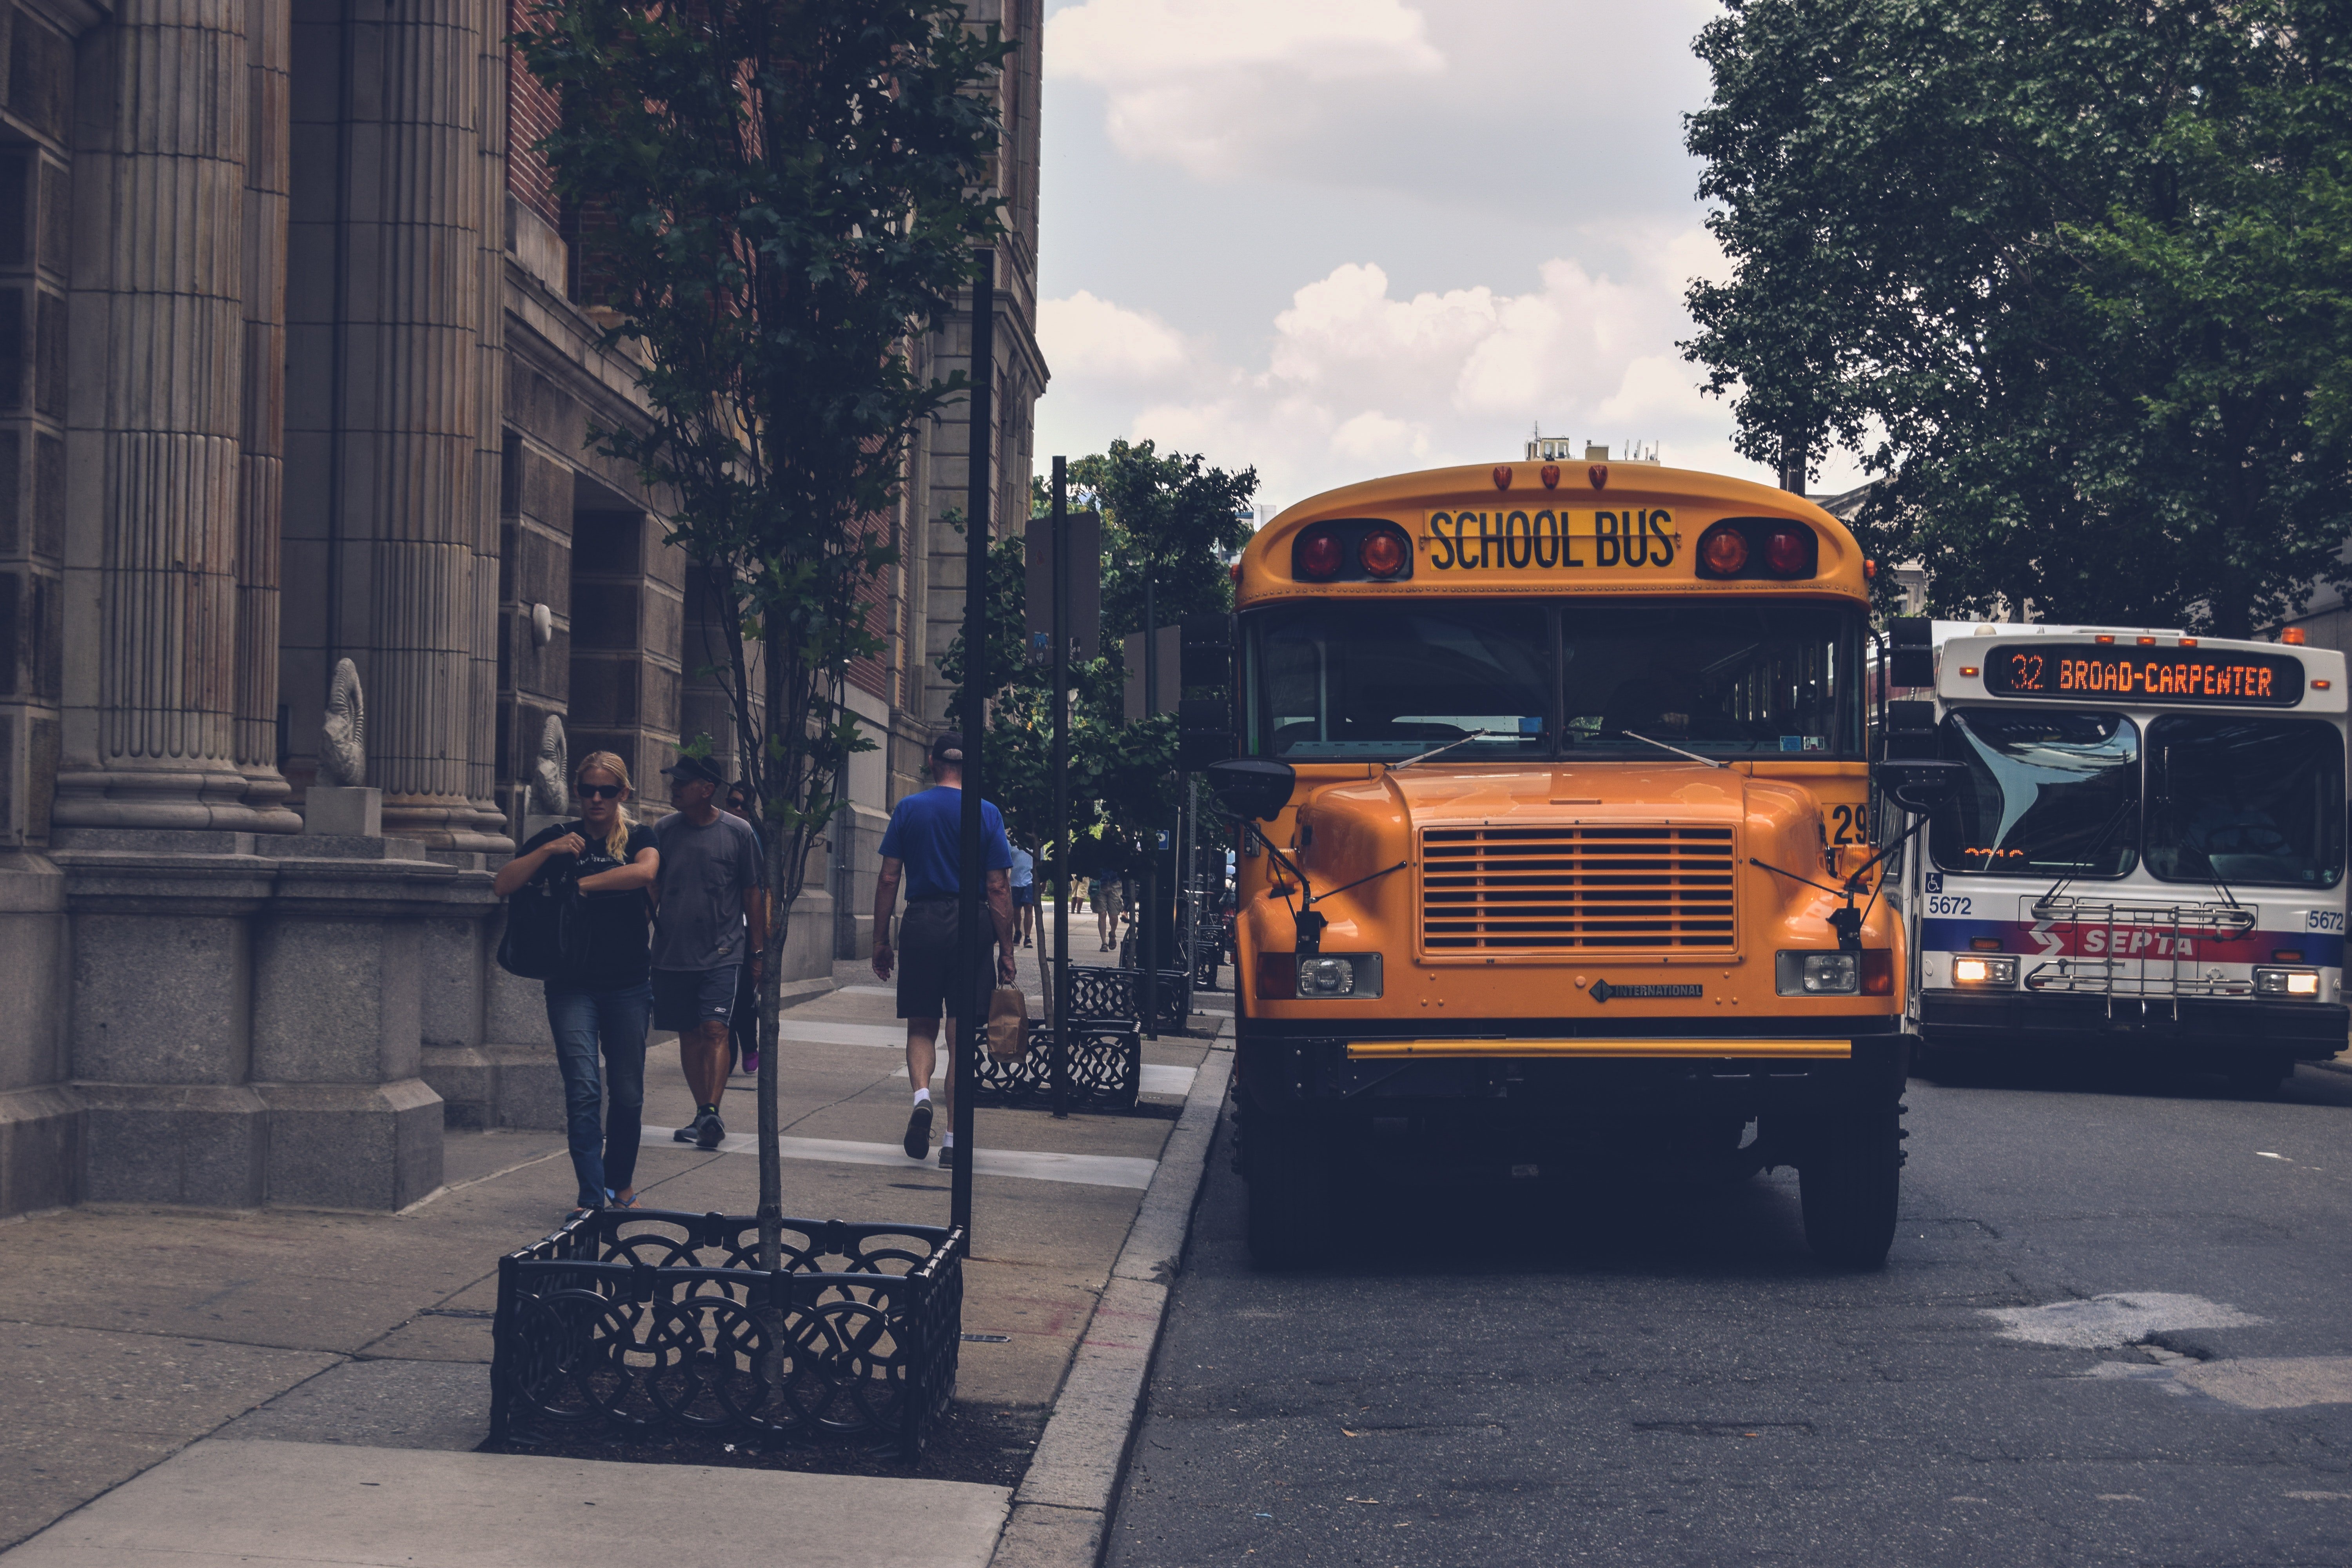 Elizabeth versuchte, ihren Schulbus zu finden, aber sie konnte ihn nicht finden. | Quelle: Pexels